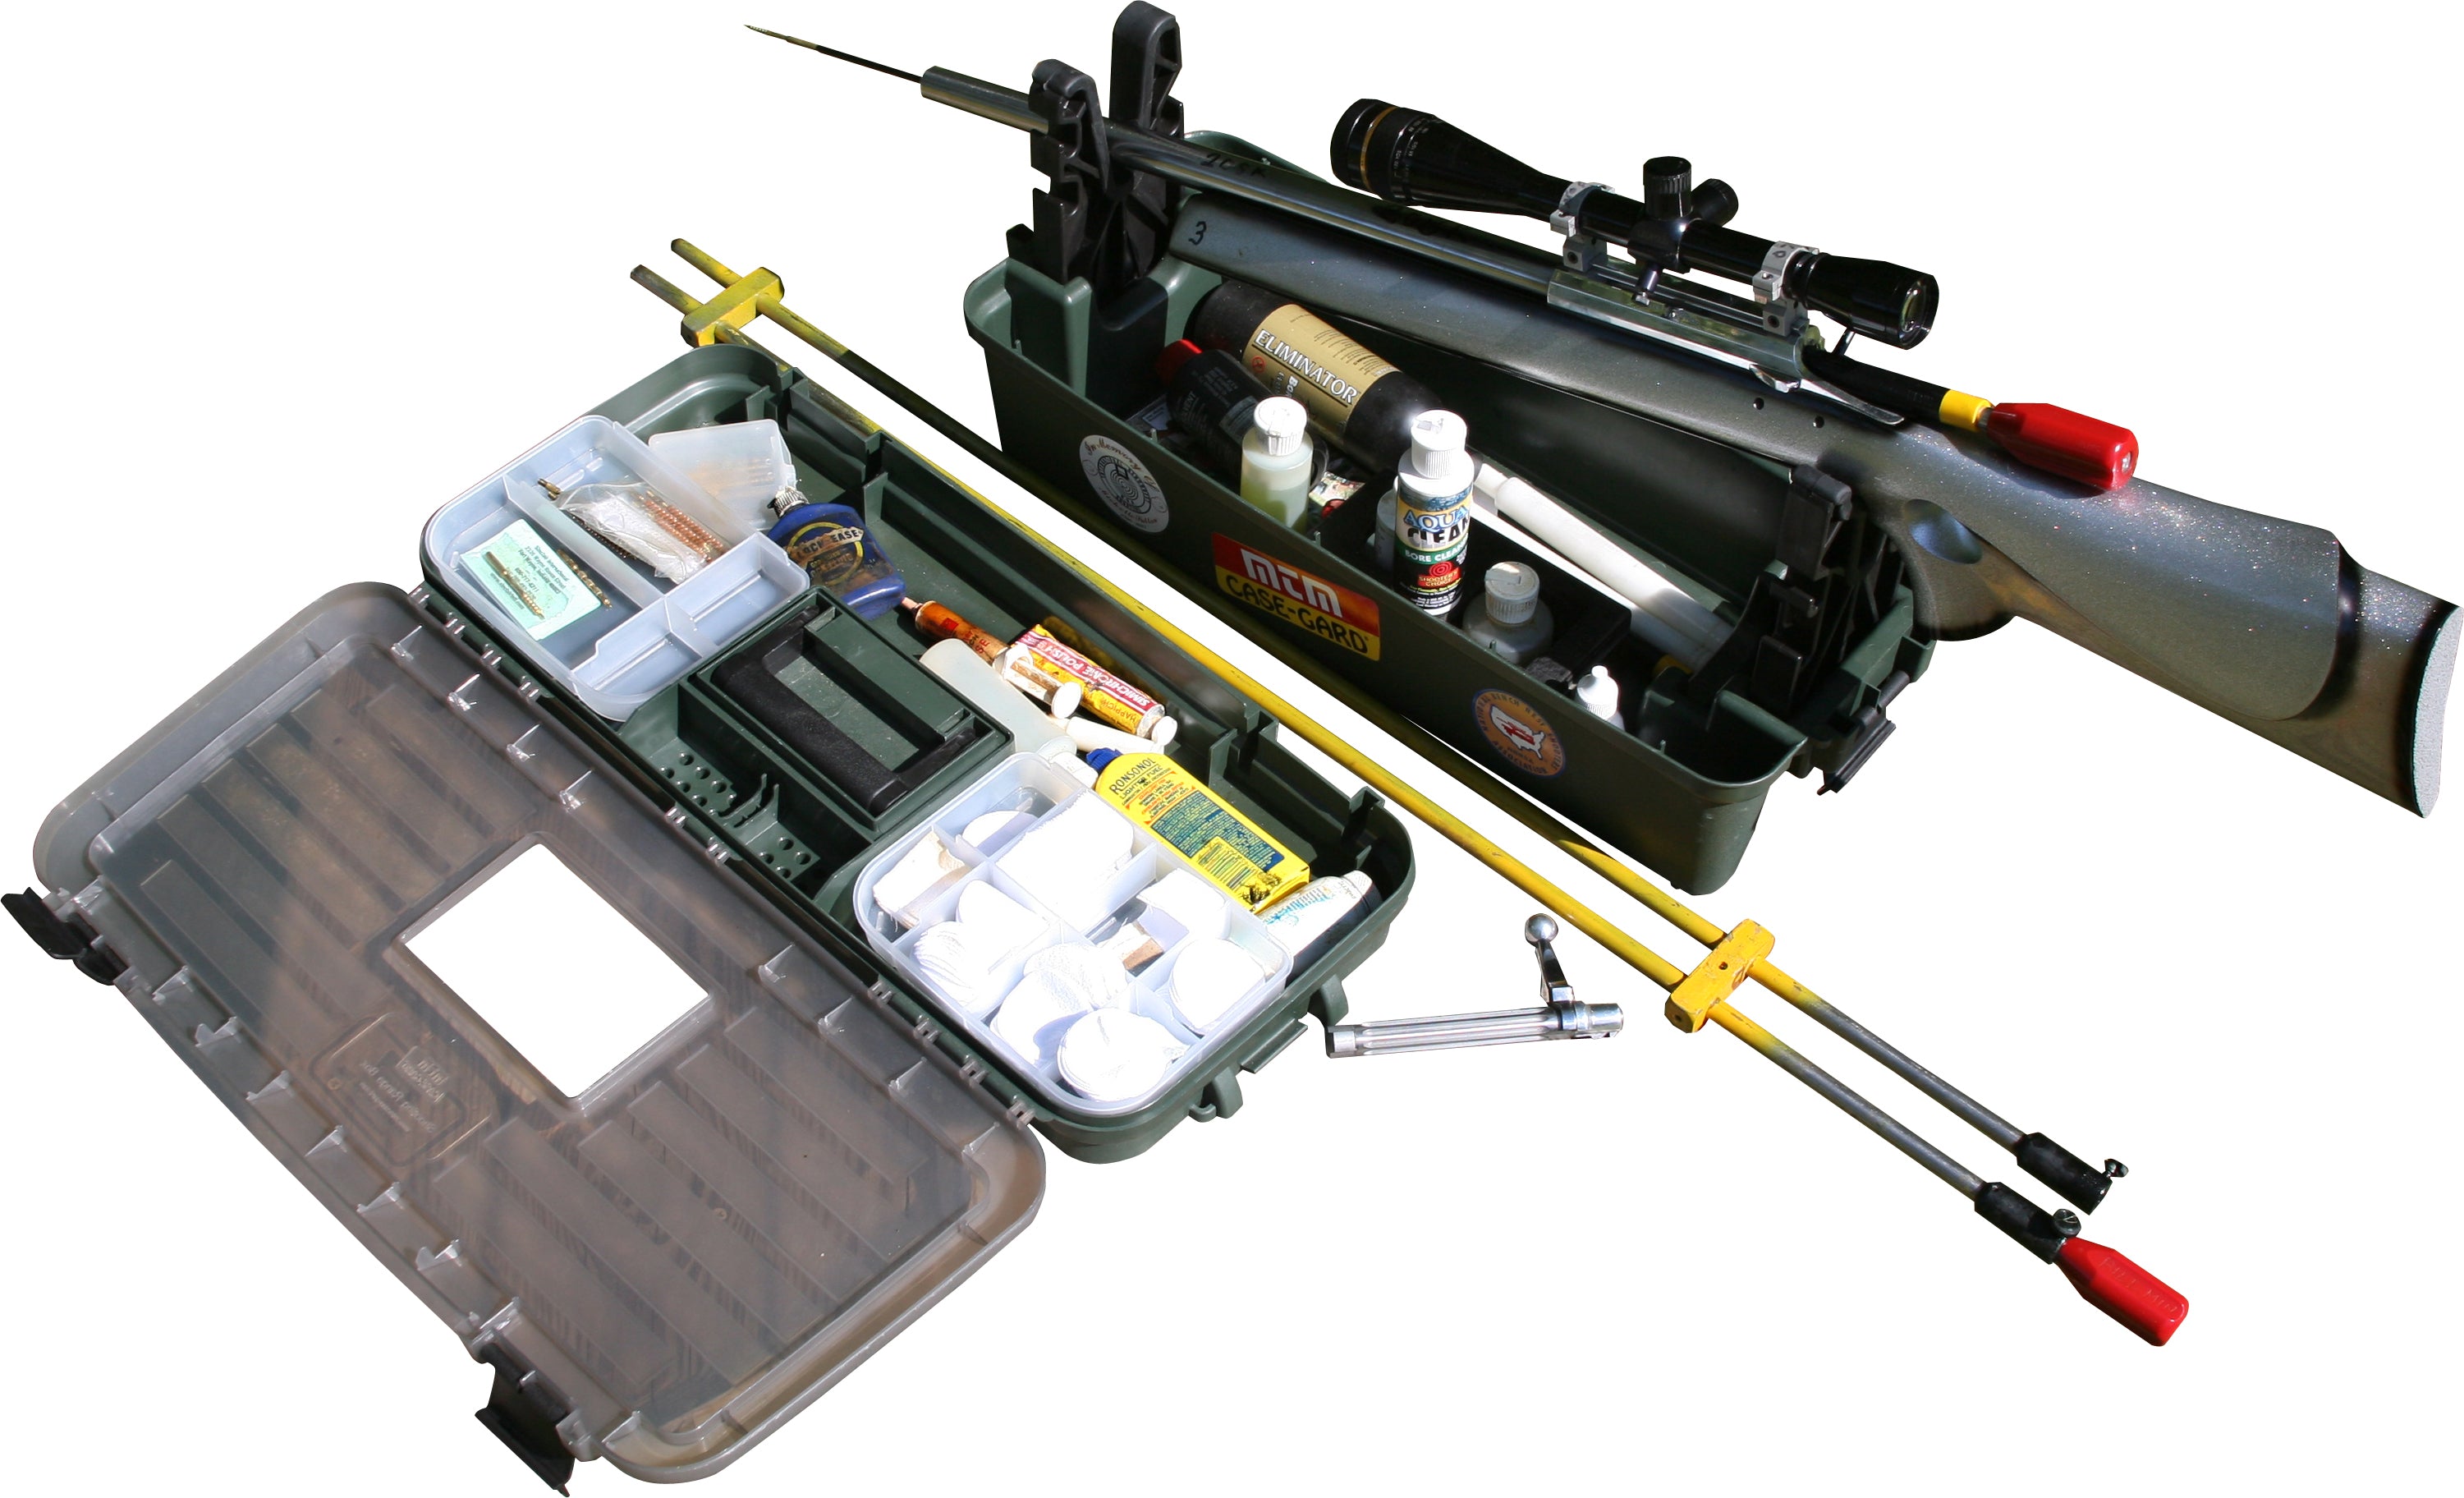 UKSW Gun Cleaning and Storage Range Box - Shotgun and Rifle